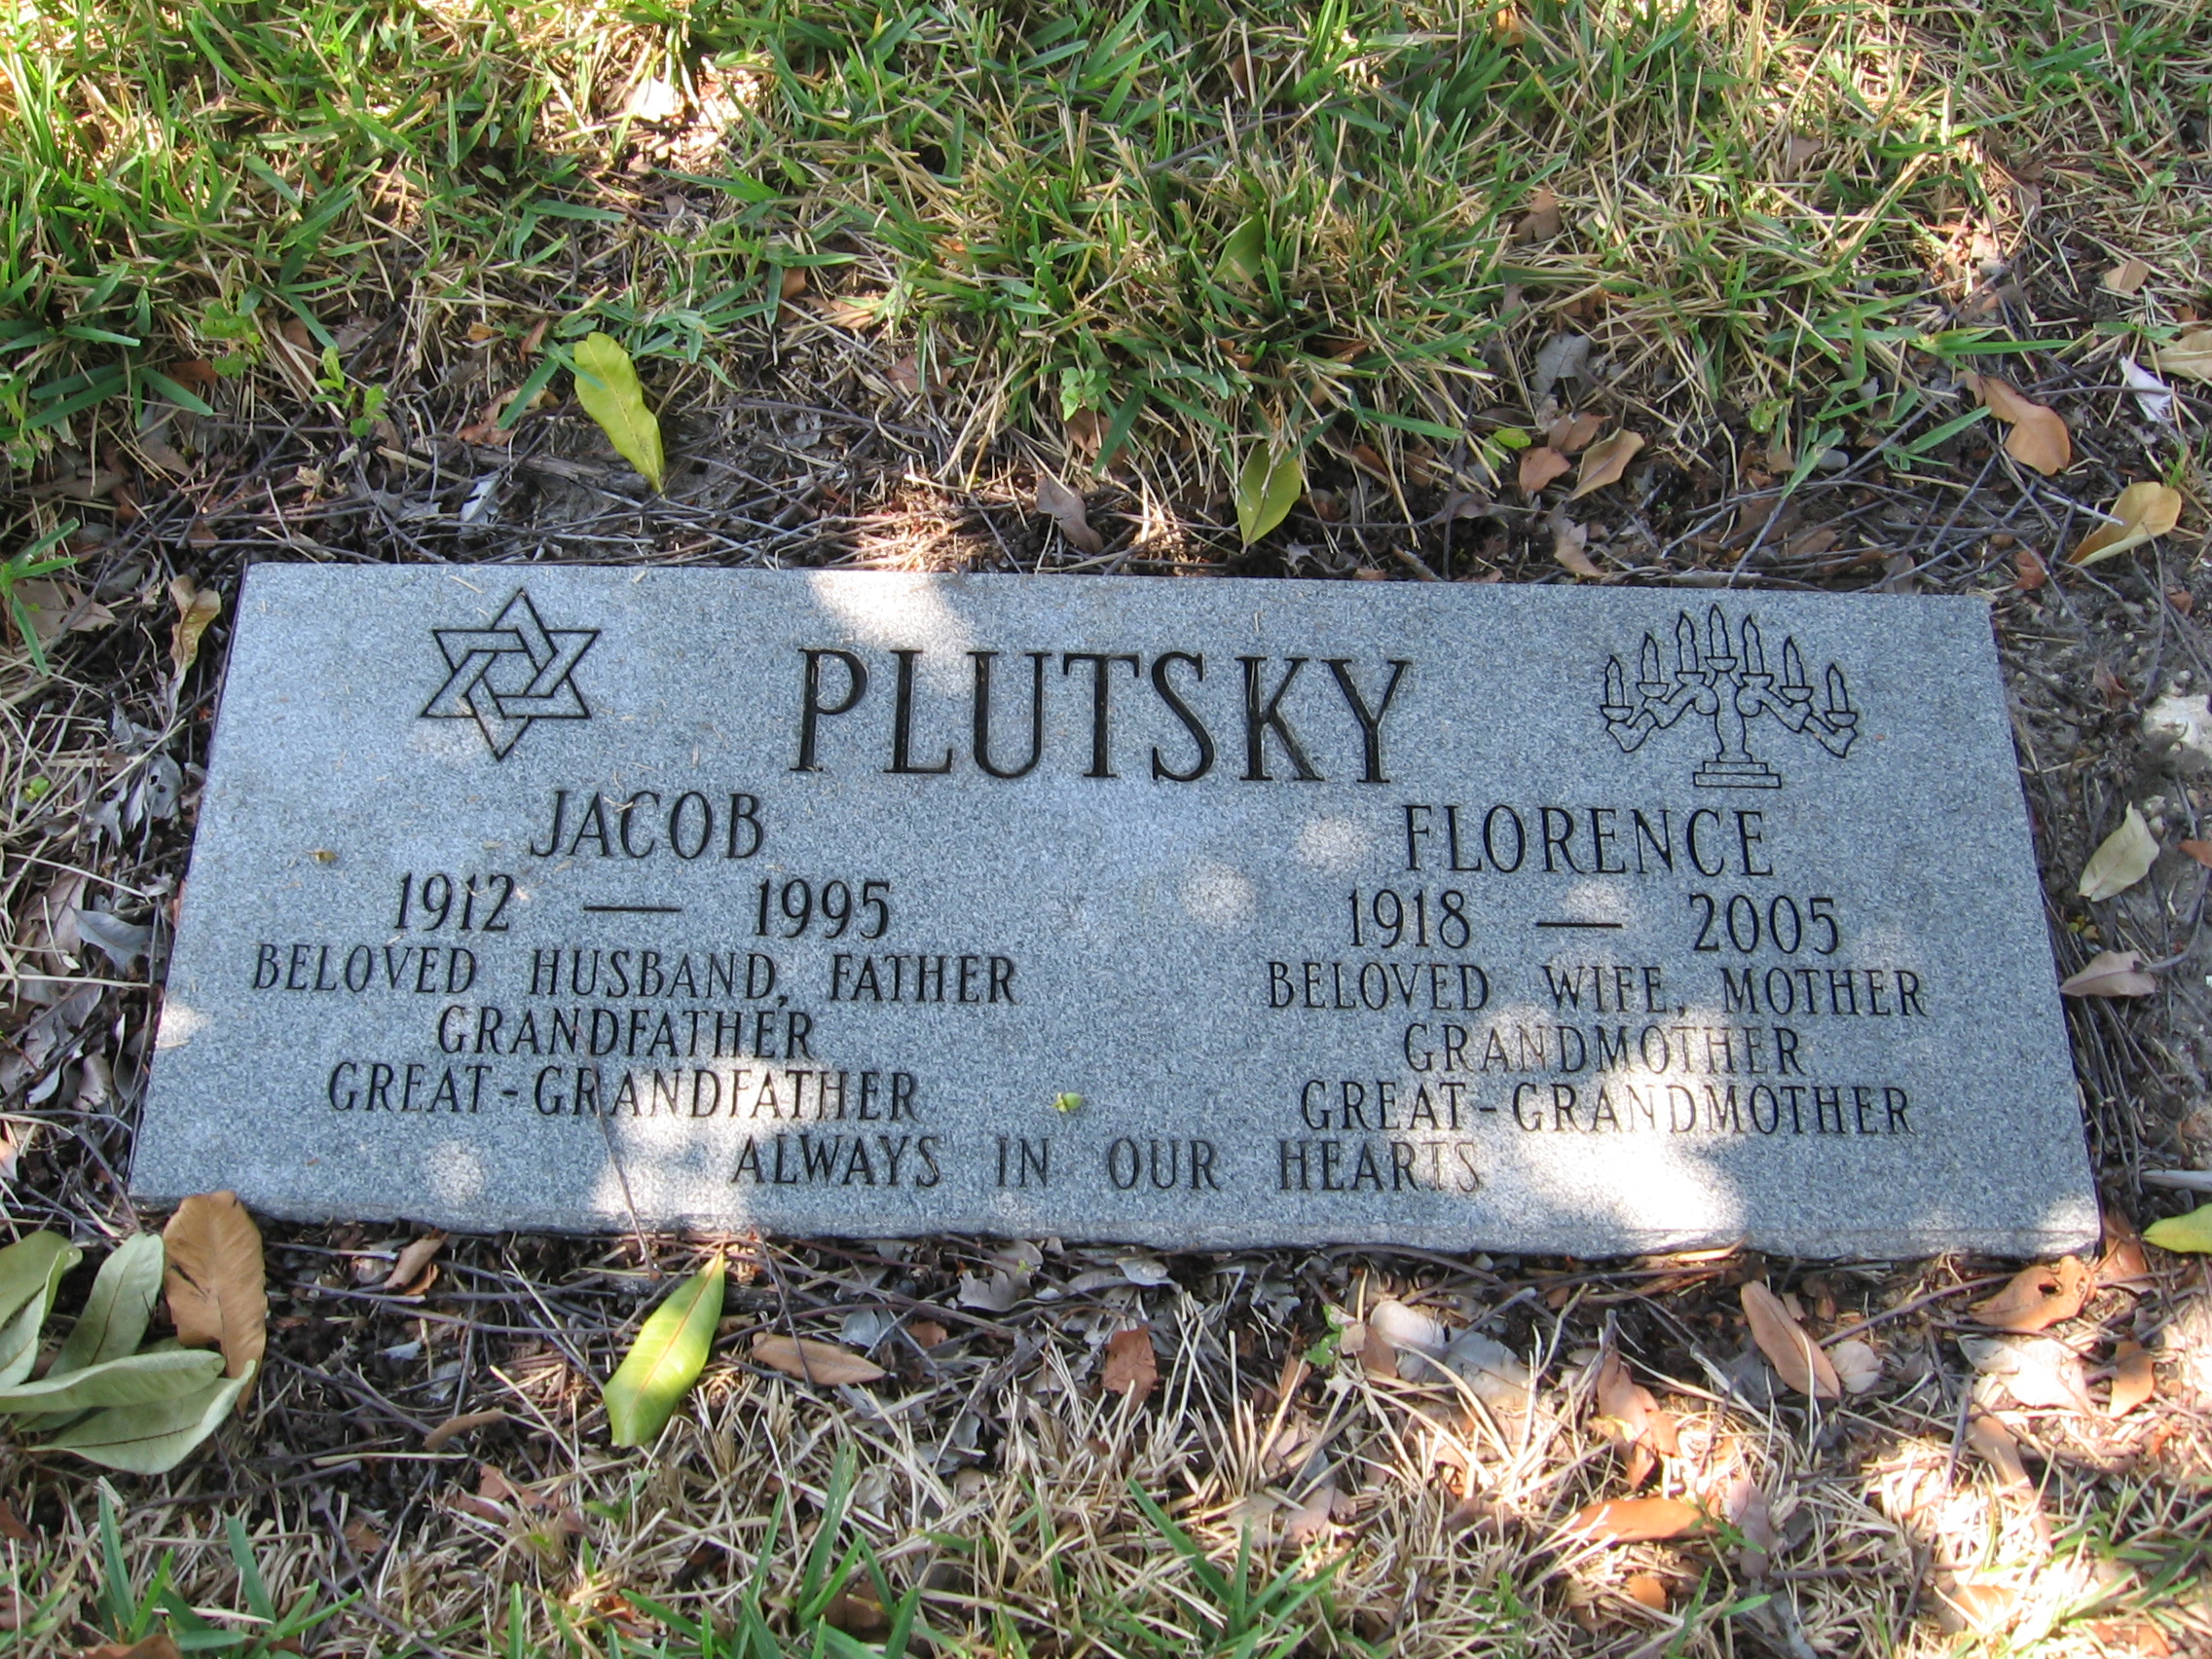 Jacob Plutsky